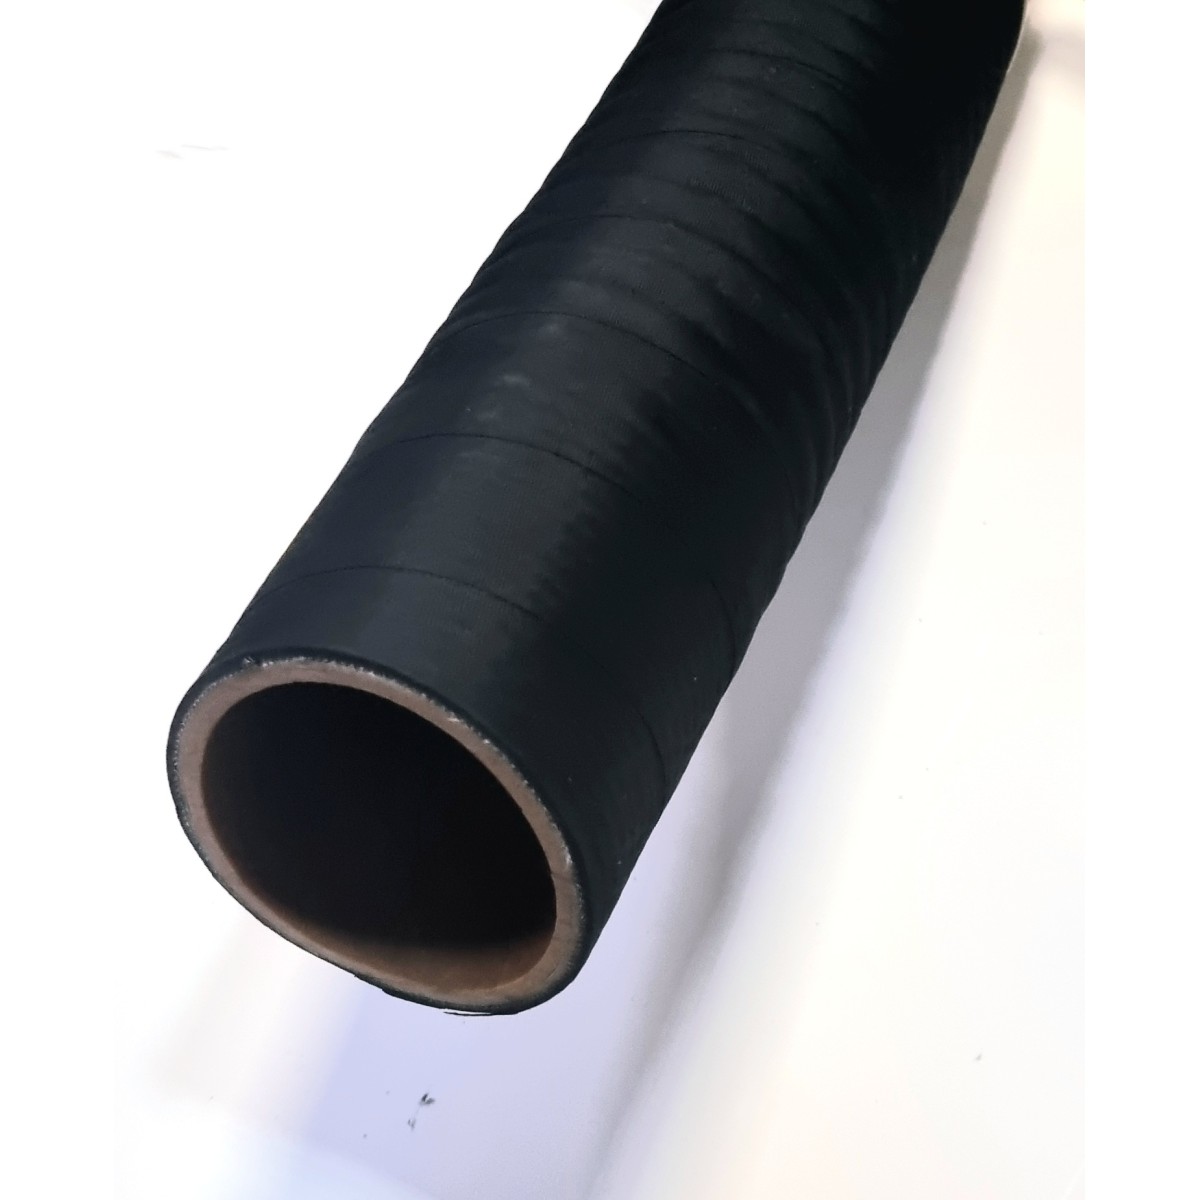 Tuyau de pompe renforcé avec filtre (24mm) noir 7m x 0,8, Outillage de  jardin motorisé